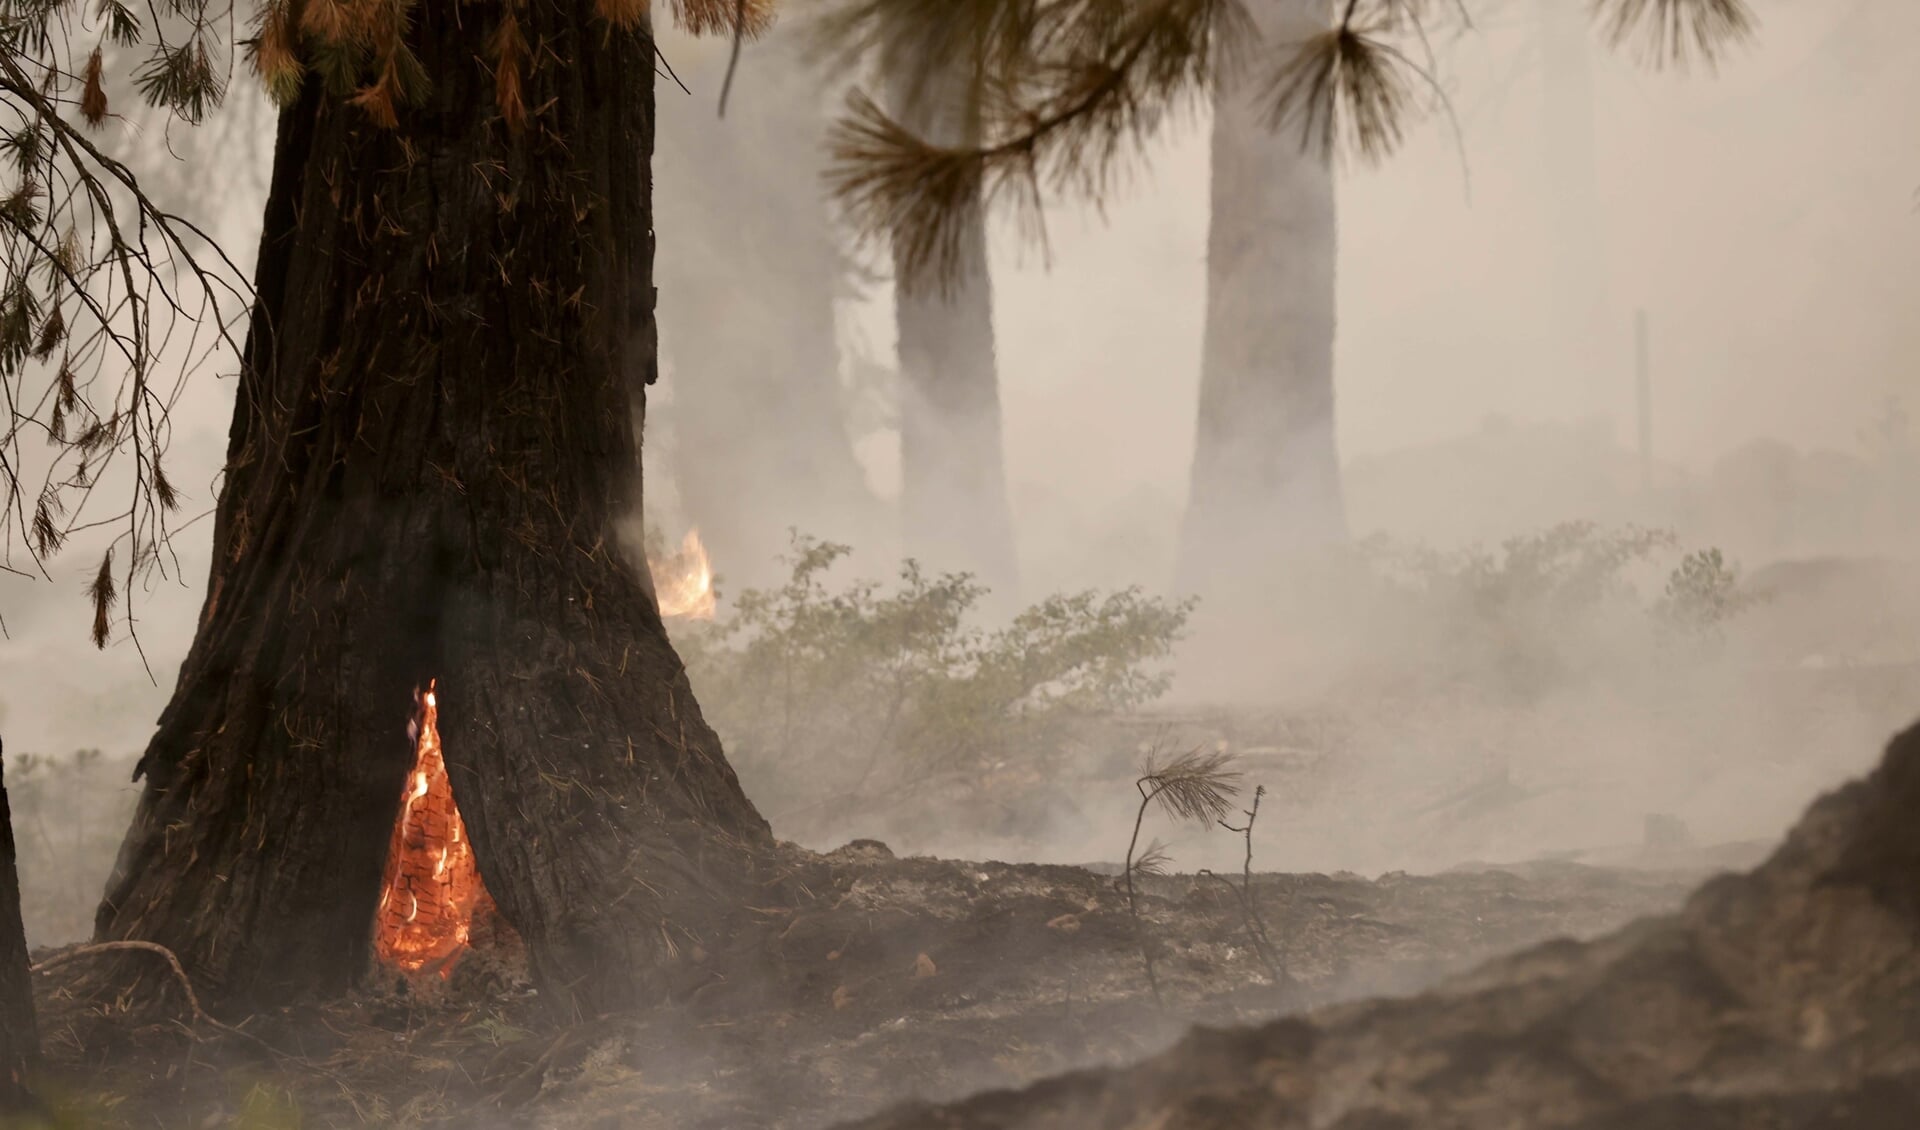 Een enorme bosbrand in een redwoodbos in het noorden van Californië, de Dixie Fire, woedt al meer dan een maand. Deze foto is van eerder deze maand. De klimaatverandering is ontwrichtend, 'we zitten er middenin'.